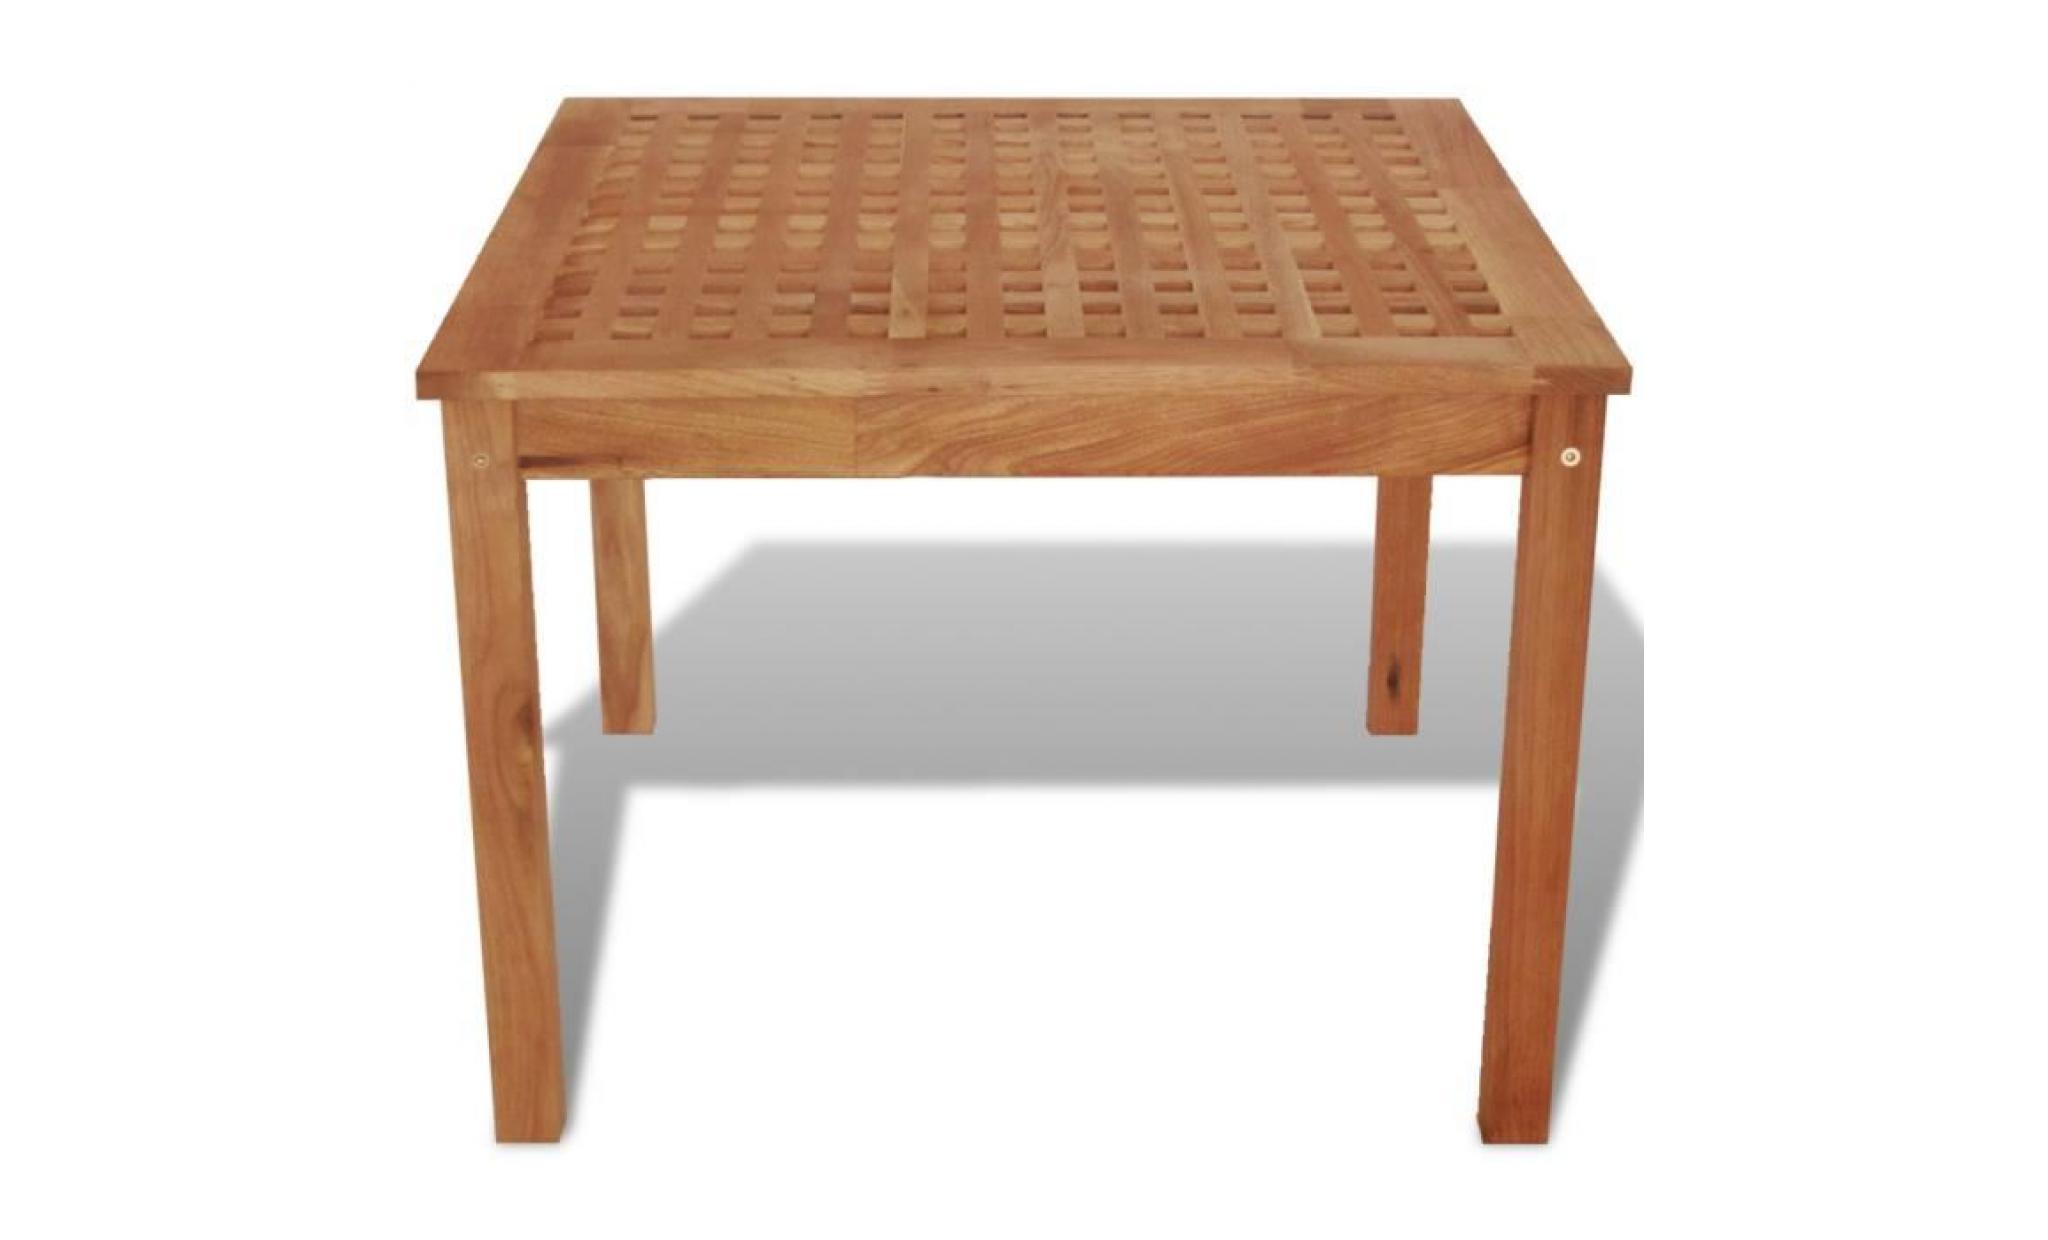 cette table auxiliaire carrée faite en bois de noyer massif sera un ajout unique à votre maison. pas cher